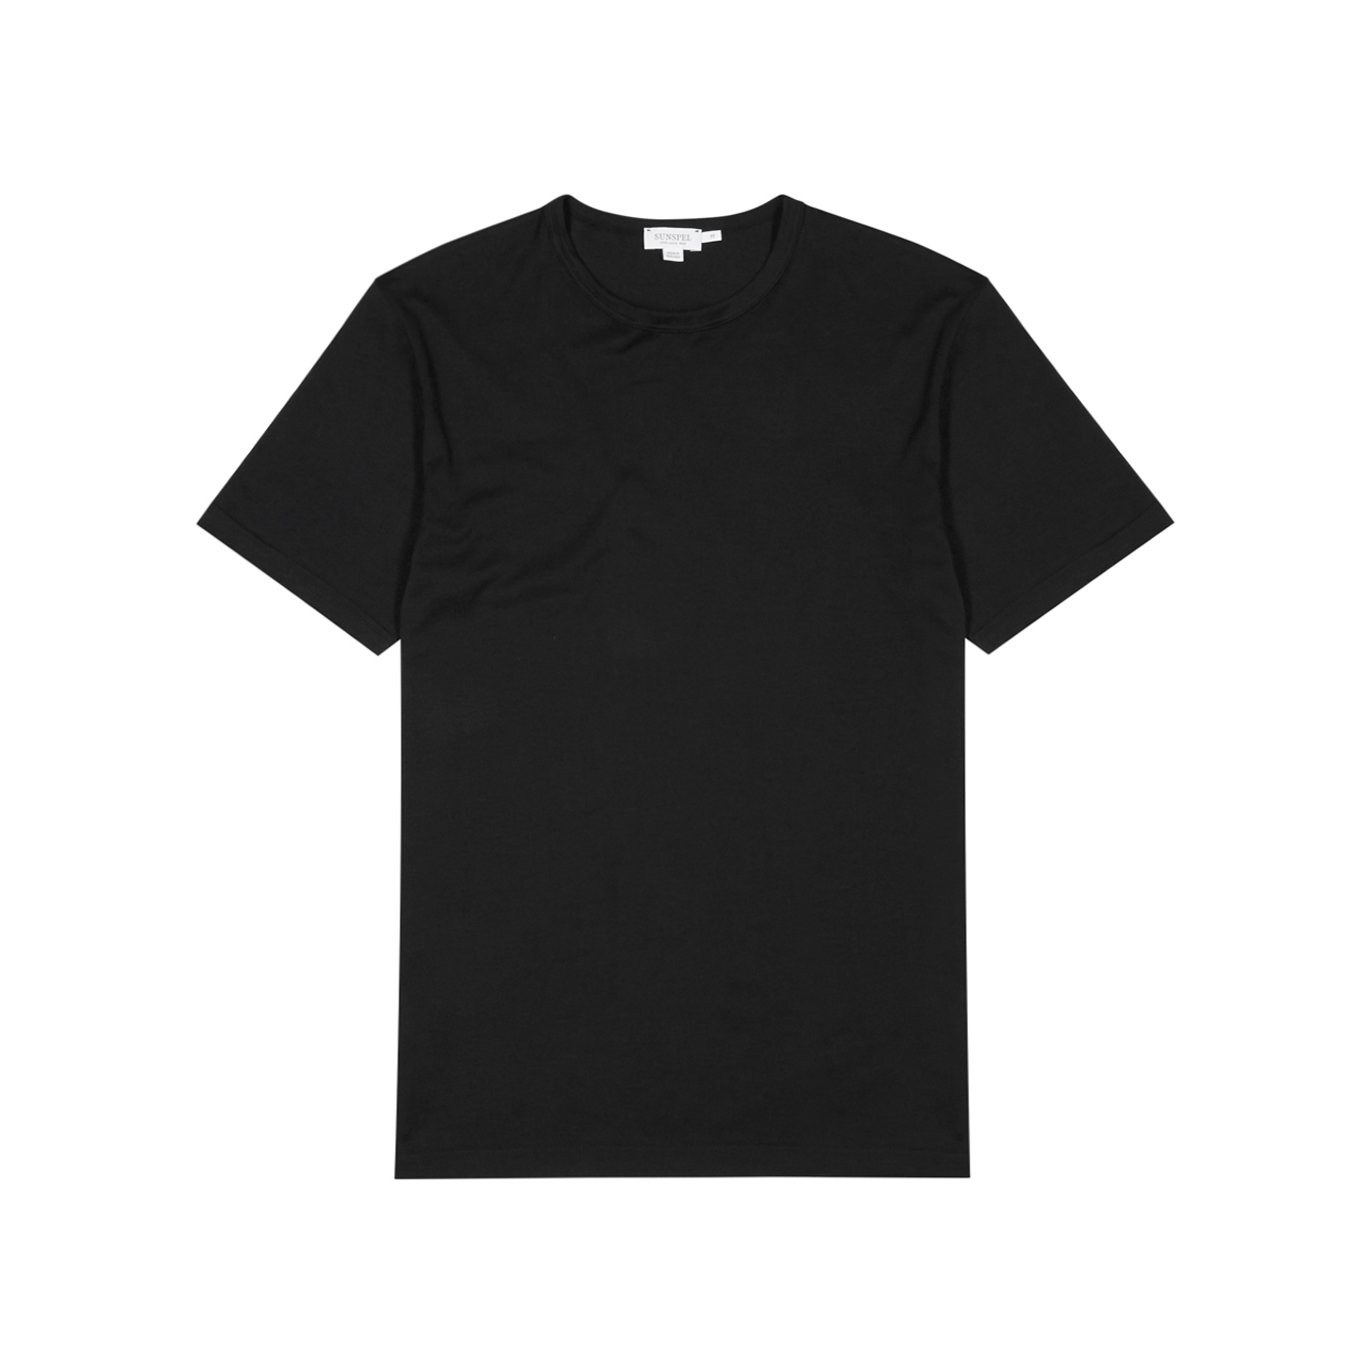 Sunspel Black Cotton T-shirt - XS